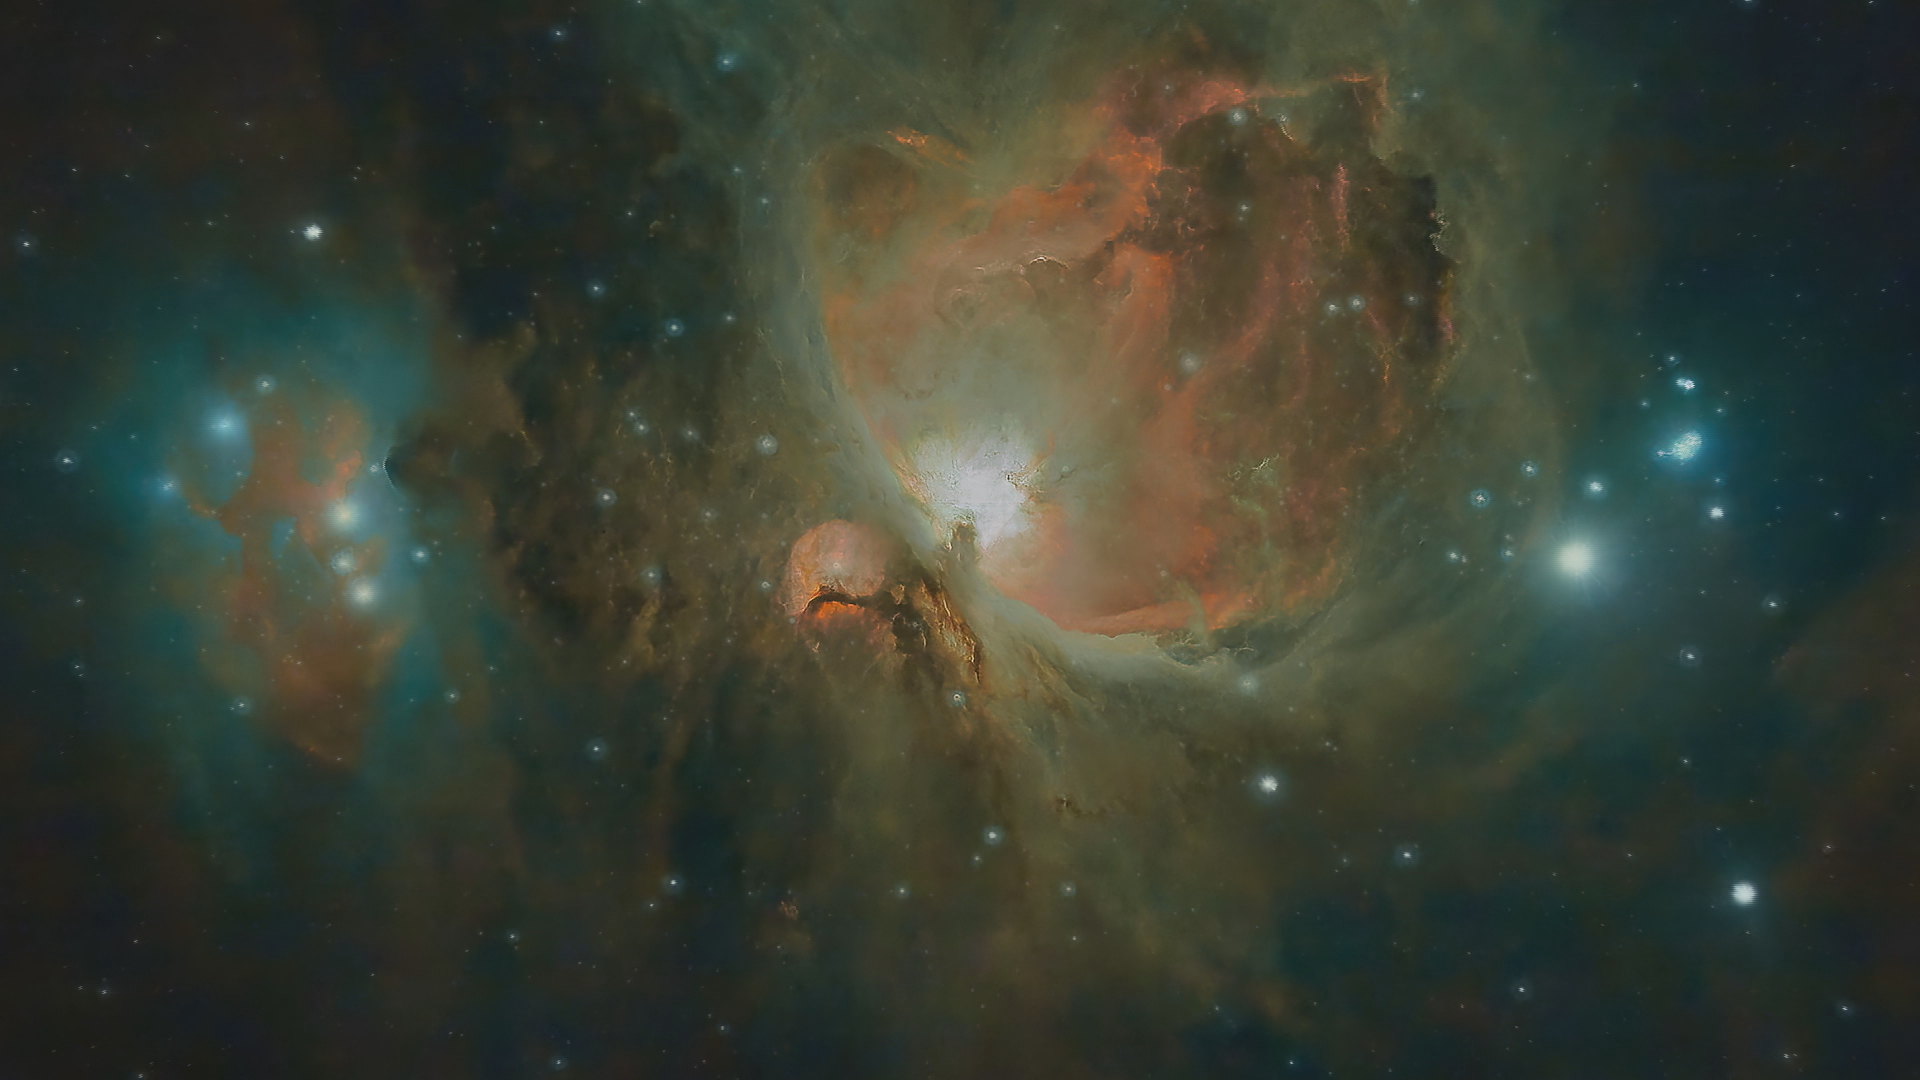 Image of the Orion Nebula (courtesy of Graham Hazlegreaves).